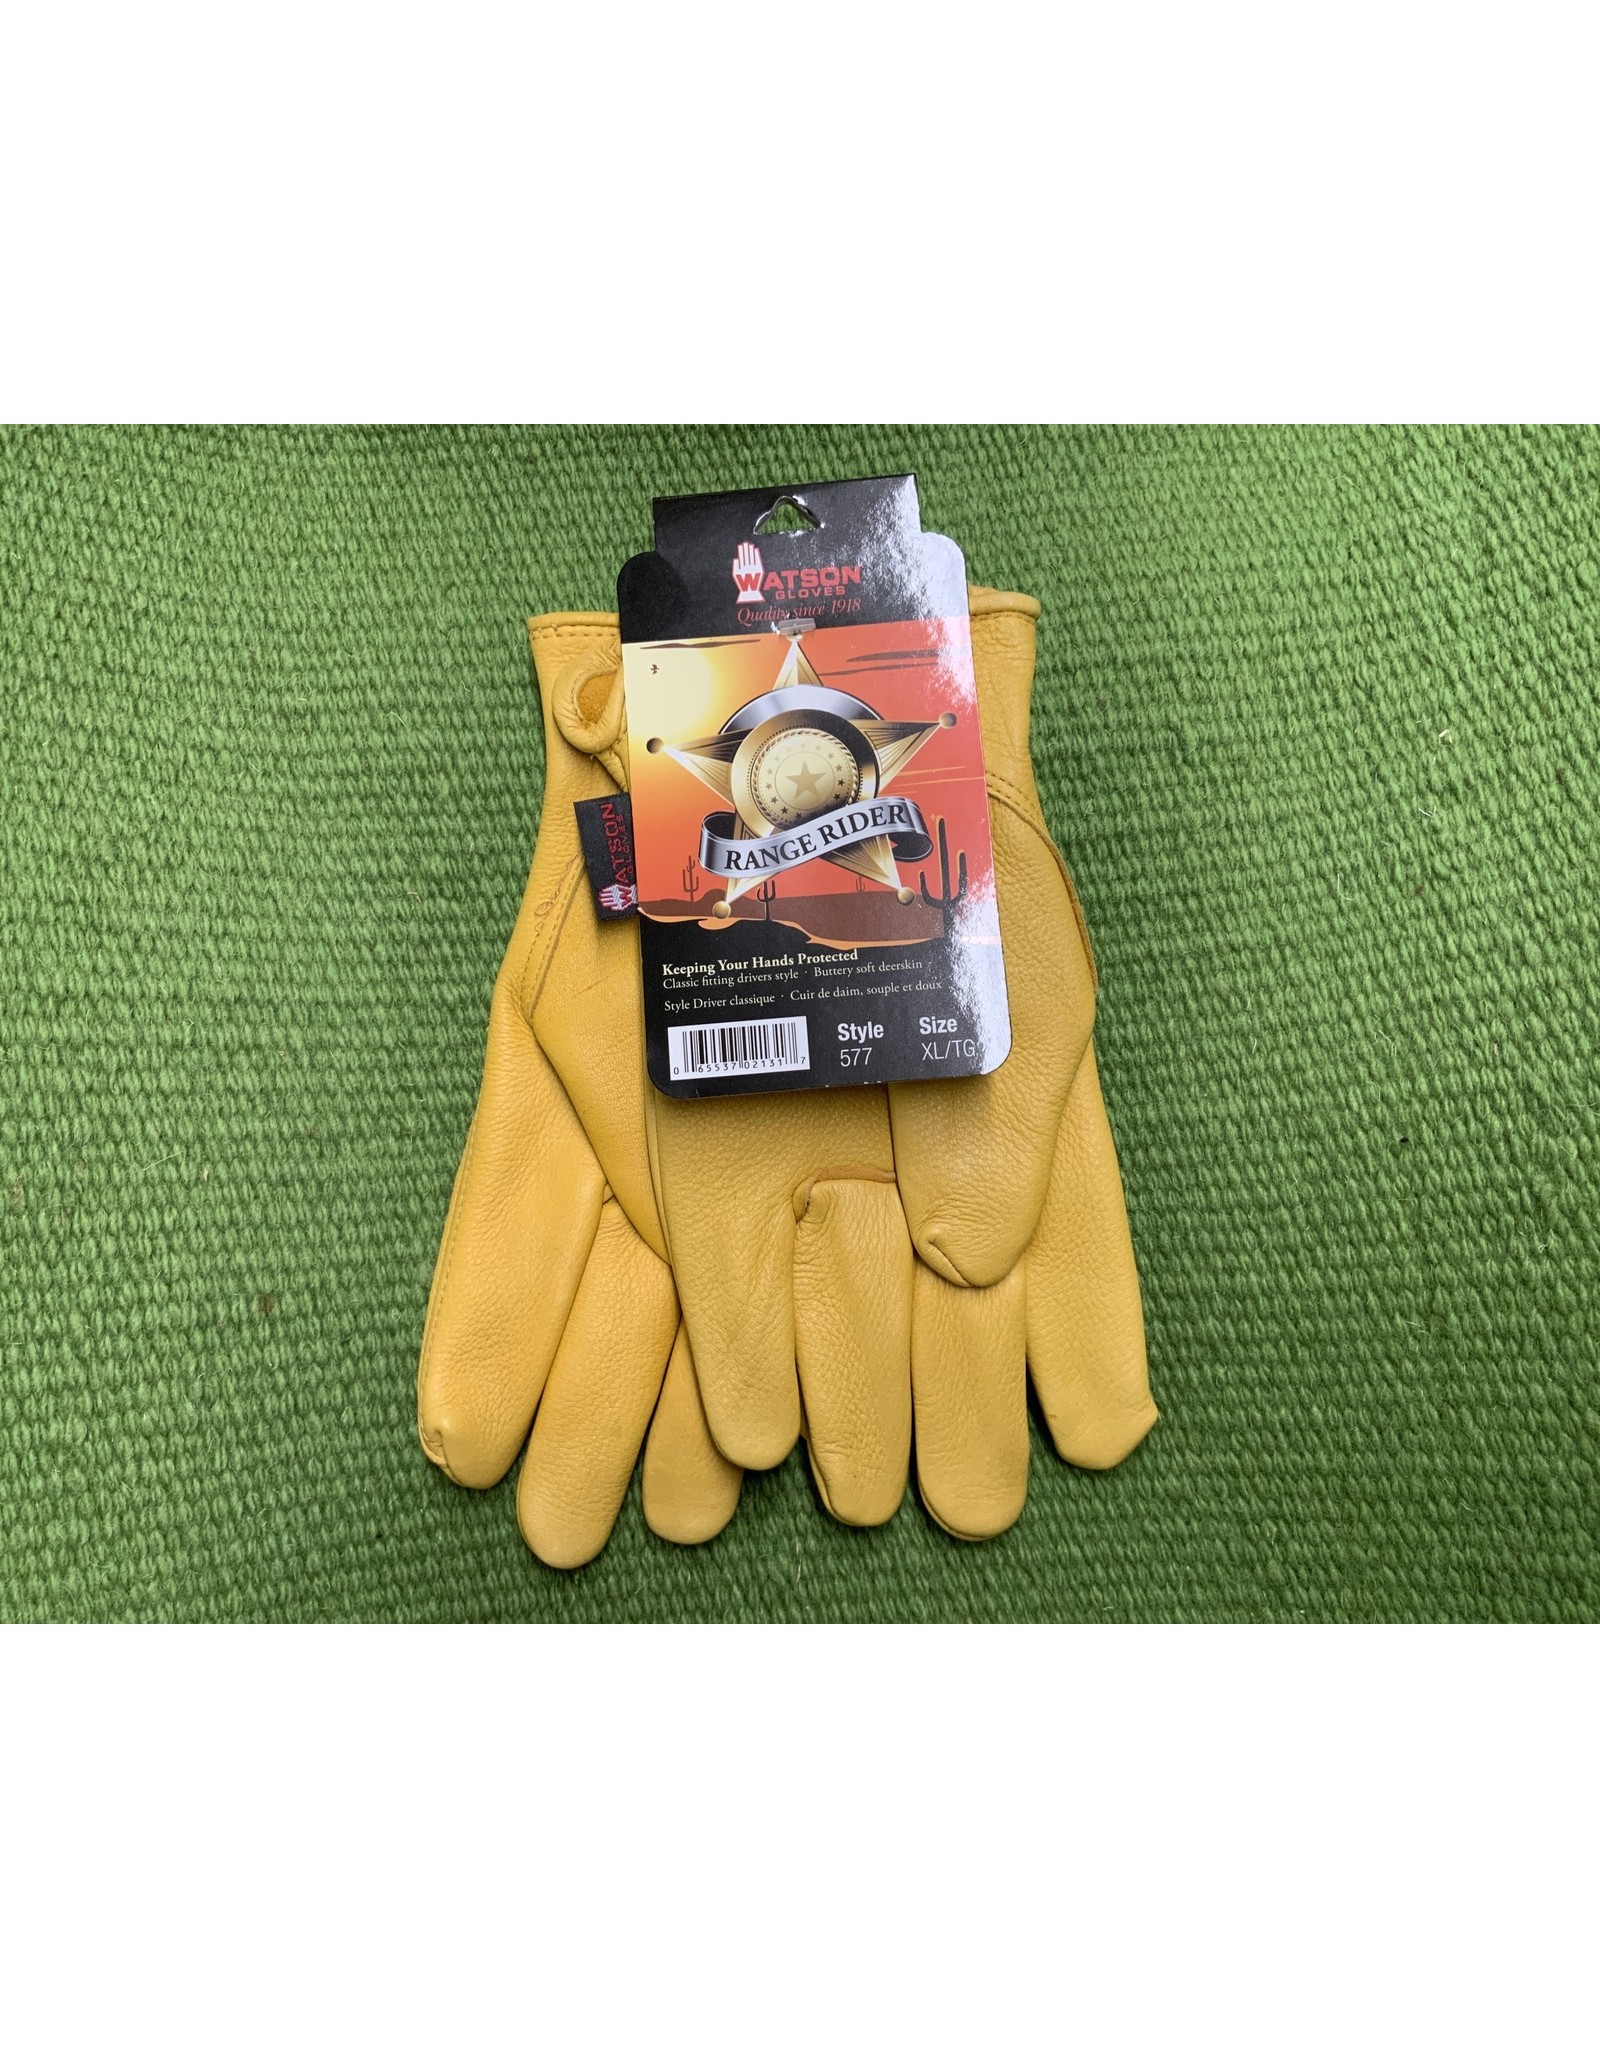 Watson Gloves Gloves*Range Rider Men's Tan-XL 577